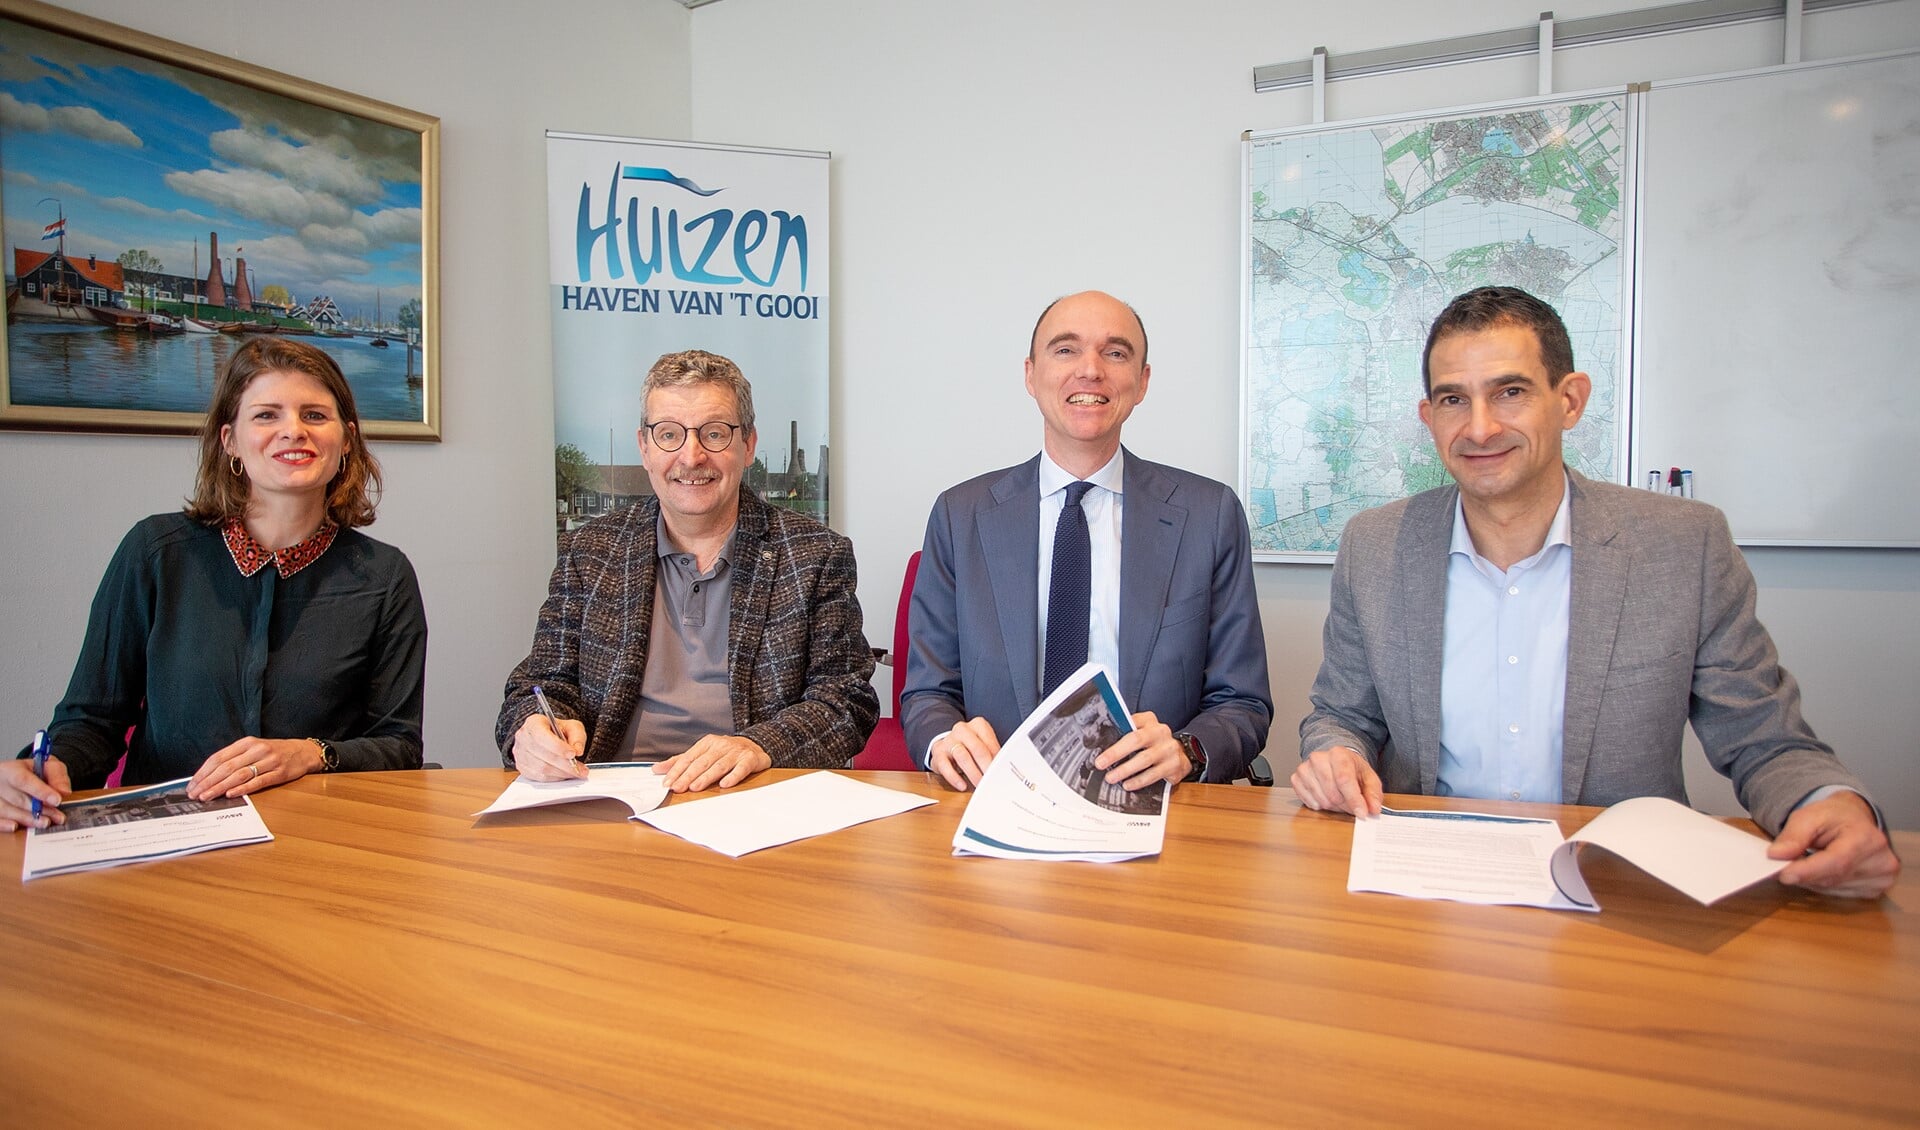 Wethouder Maarten Hoelscher (r) ondertekende voor de gemeente Huizen de overeenkomst.